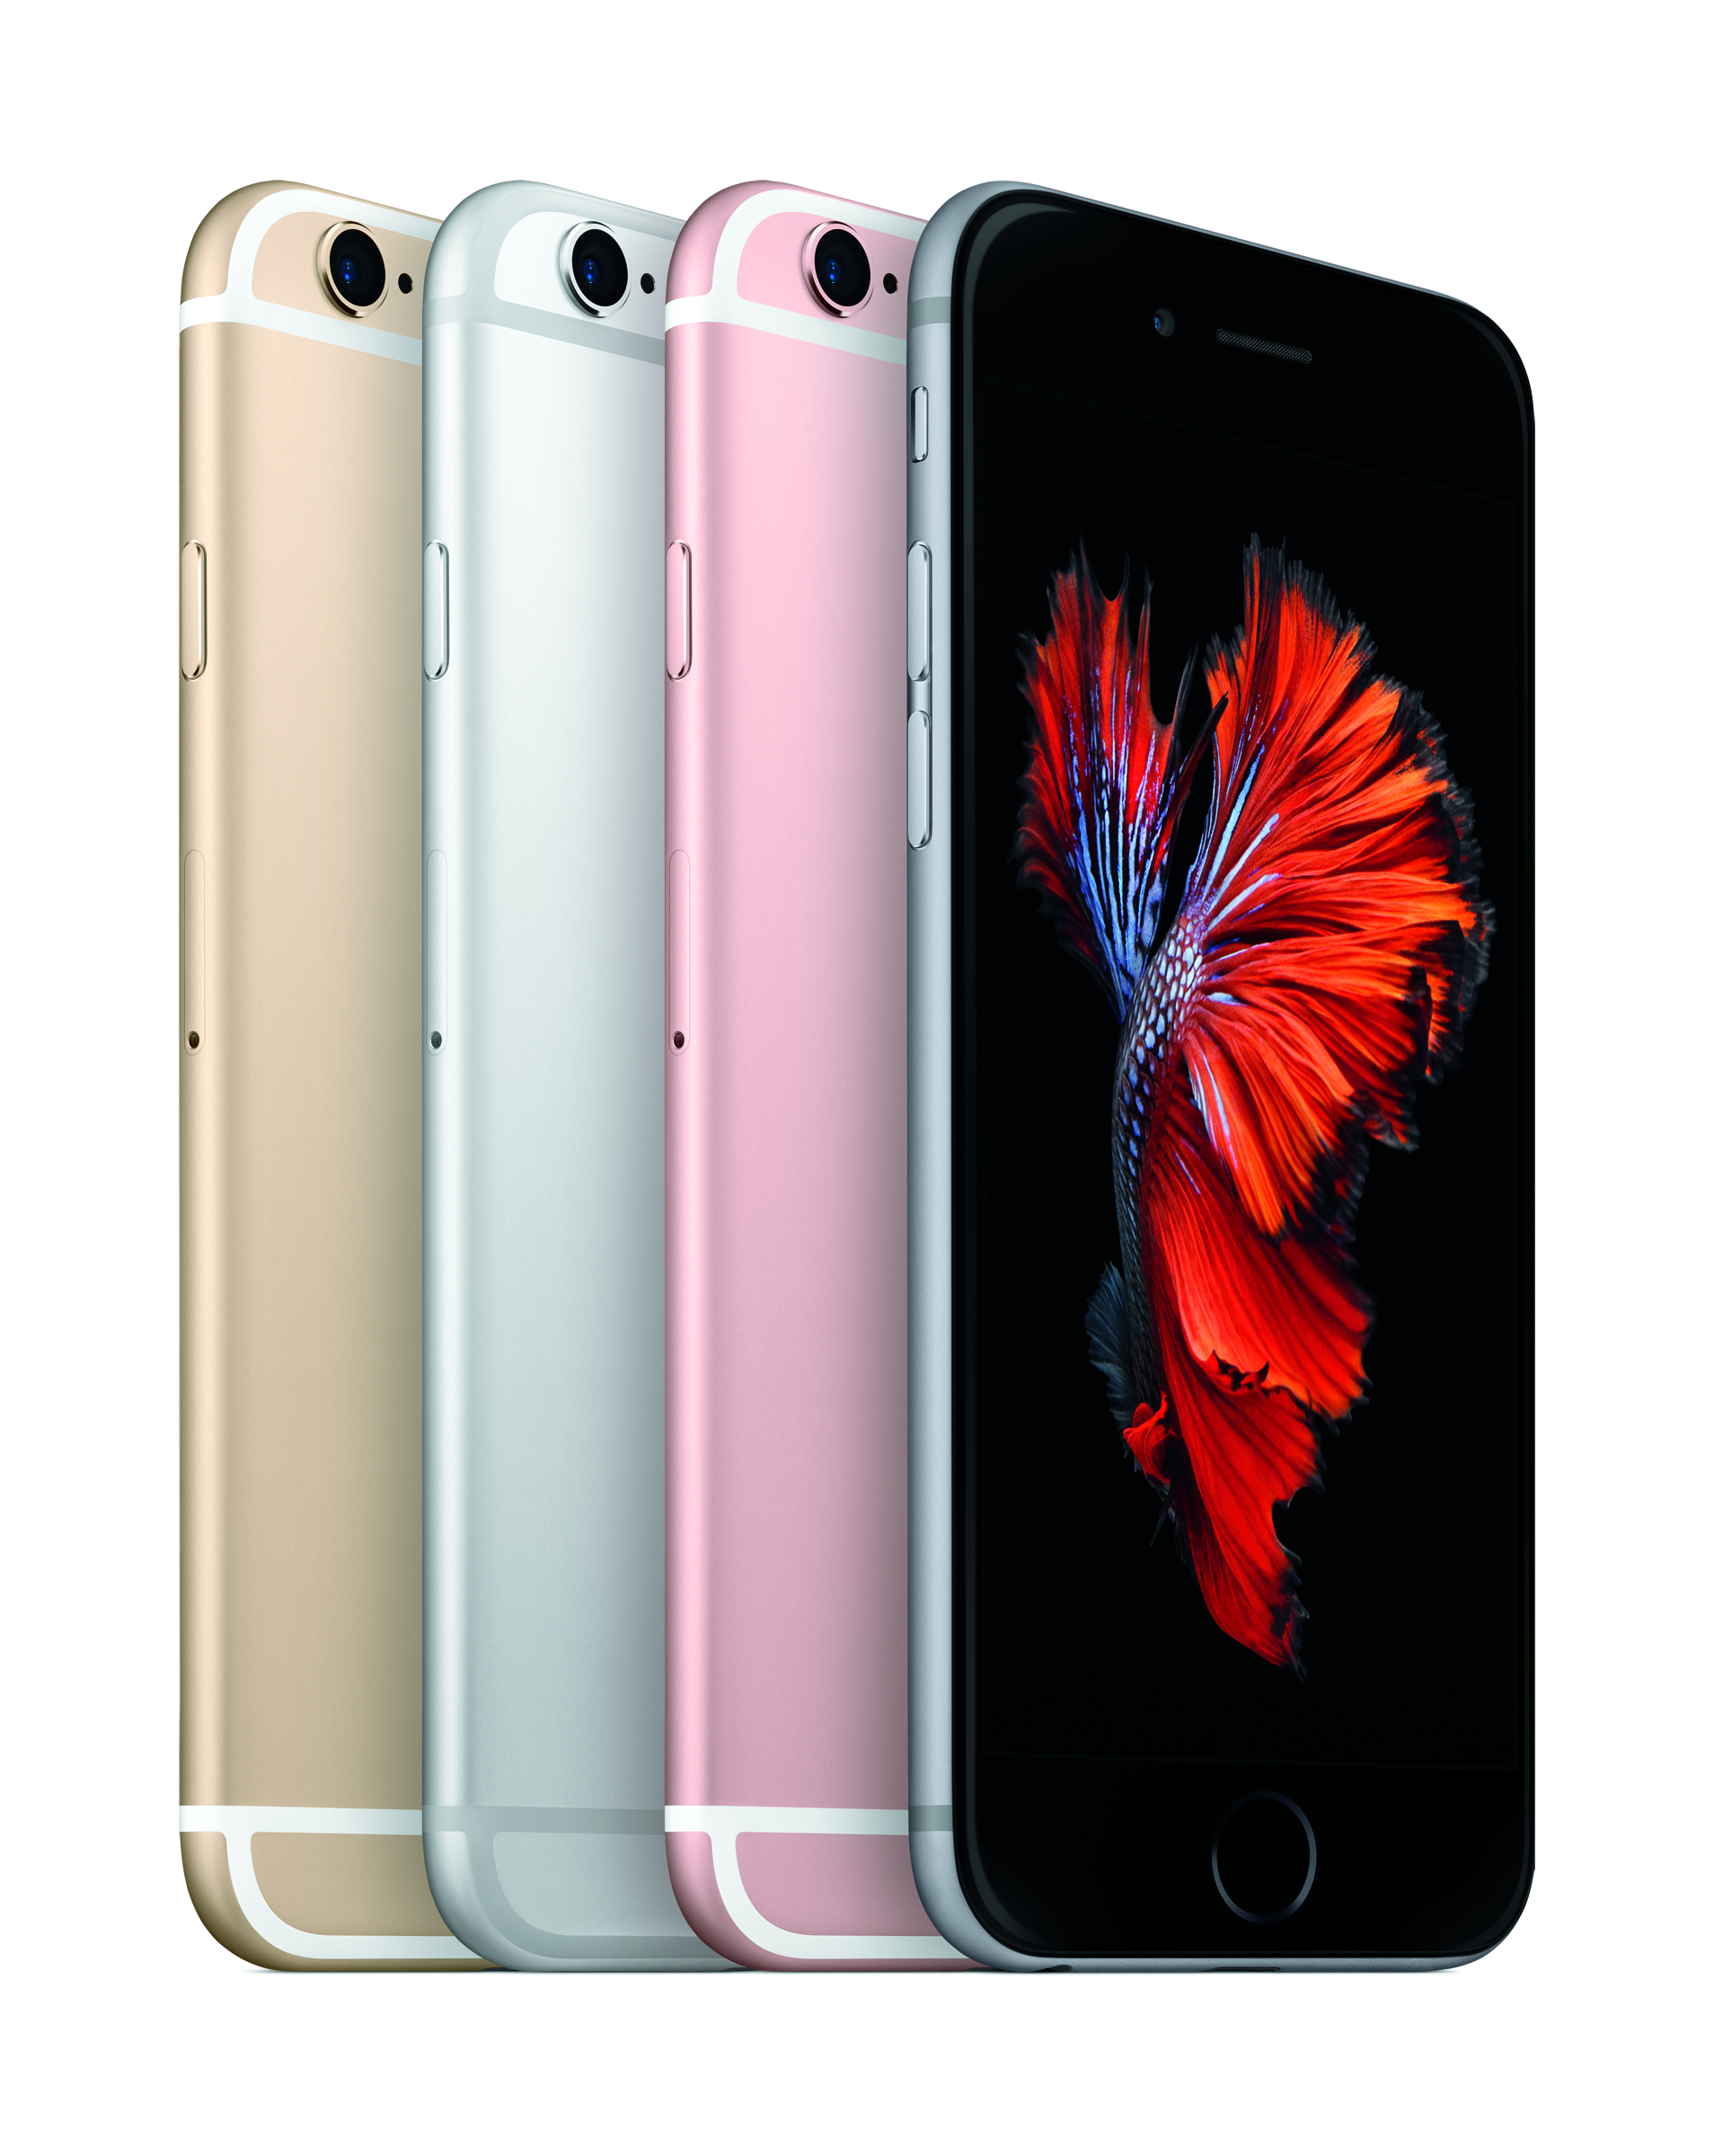 iPhone 6s Preiskracher: 32 GB Variante bei mobilcom-debitel für 569,99 Euro